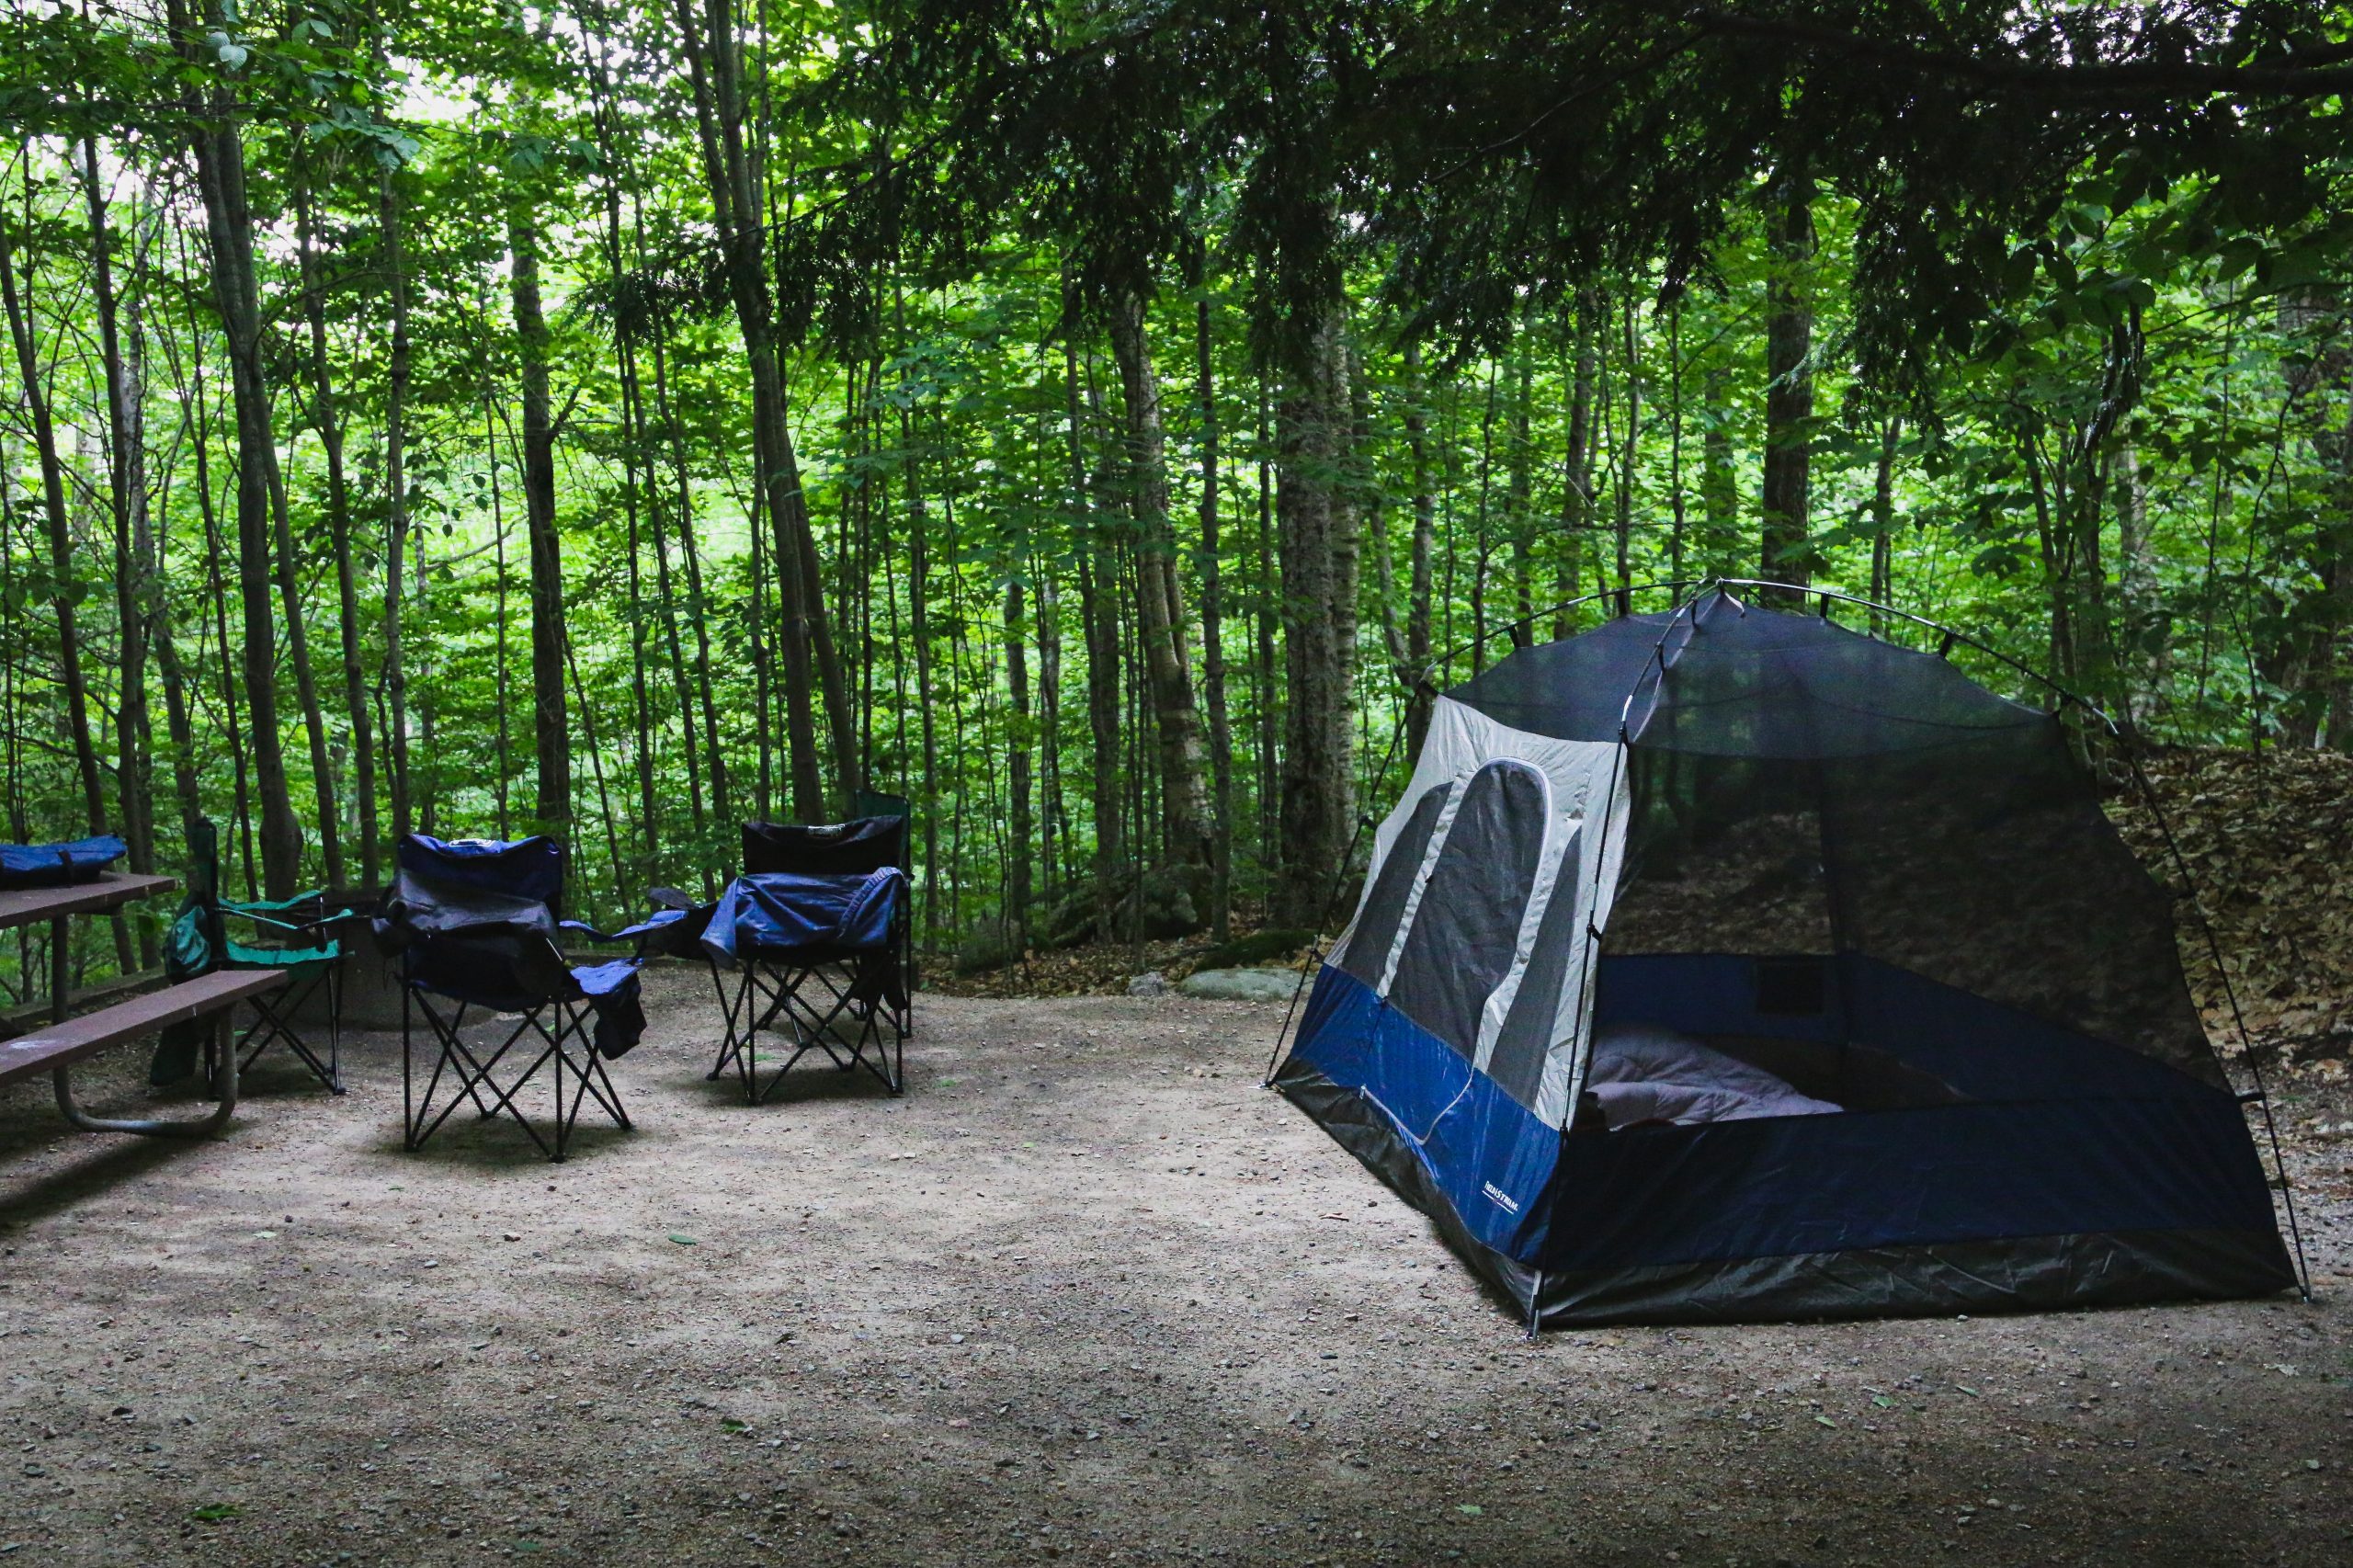 Réserver un week-end dans un camping des Landes : bonne idée ?